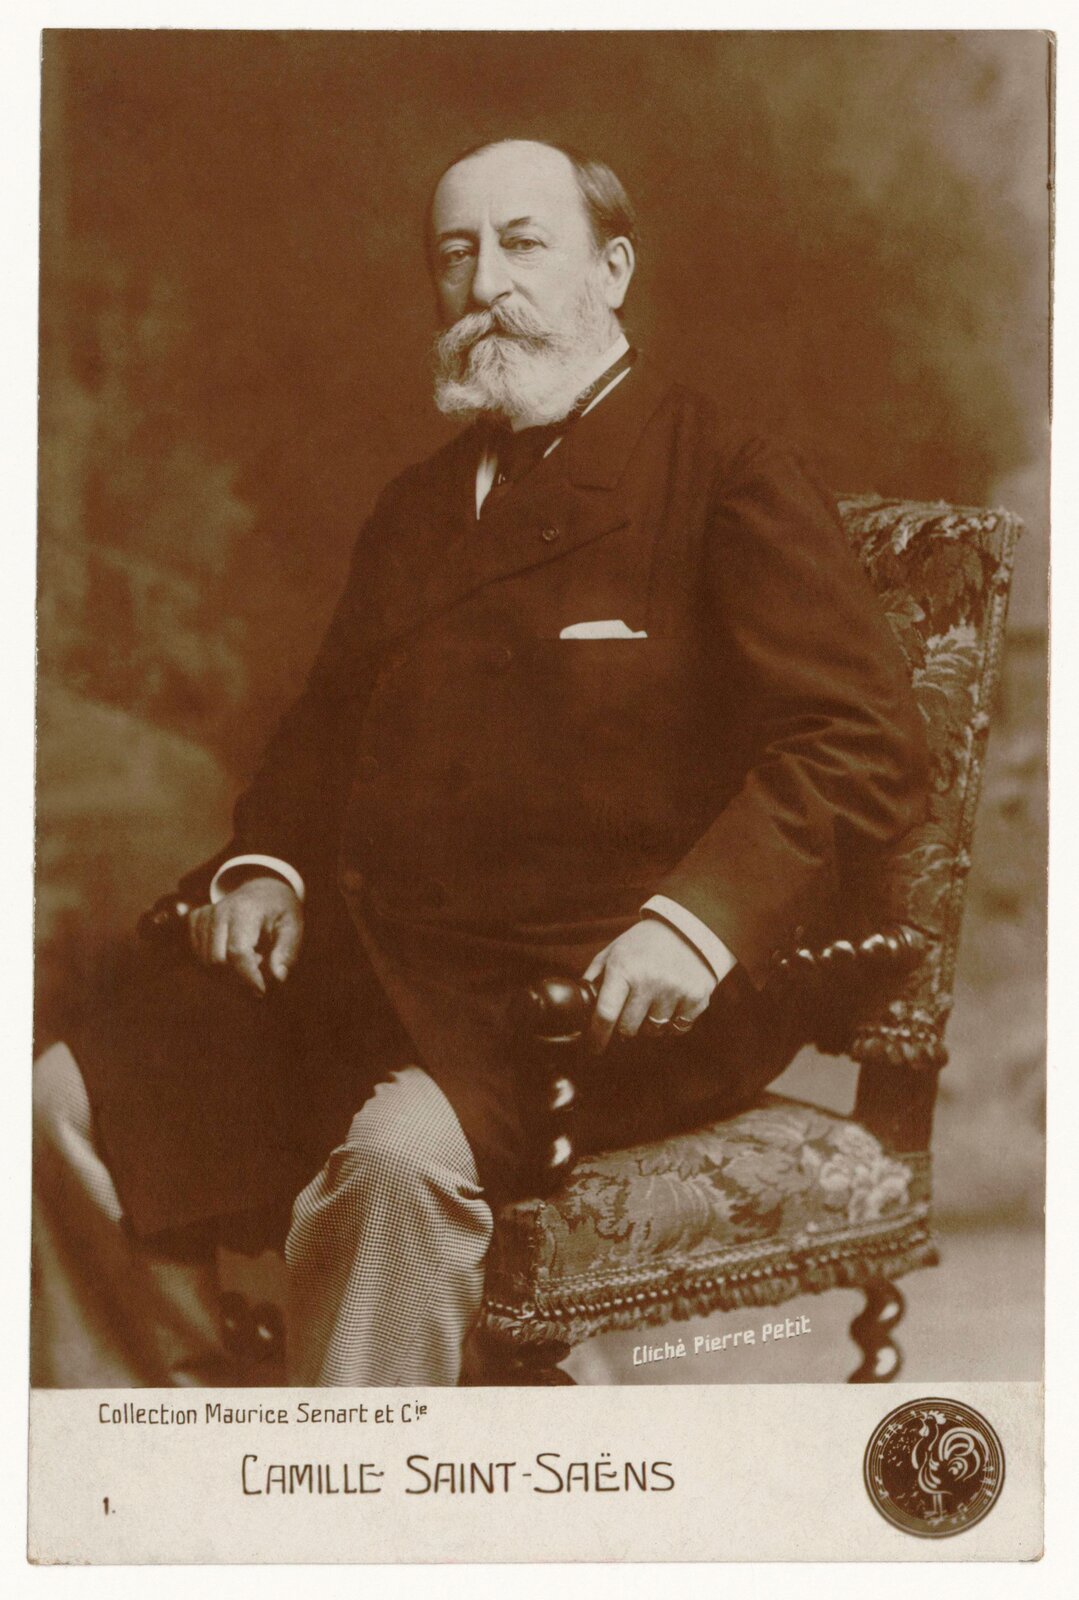 Ilustracja przedstawia fotografię z portretem Camille Saint-Saëns. Starszy mężczyzna siedzi na zdobionym fotelu. Patrzy na wprost obiektywu, ma długie, siwe wąsy i brodę. Ubrany jest w czarny, długi płaszcz i jasne spodnie.